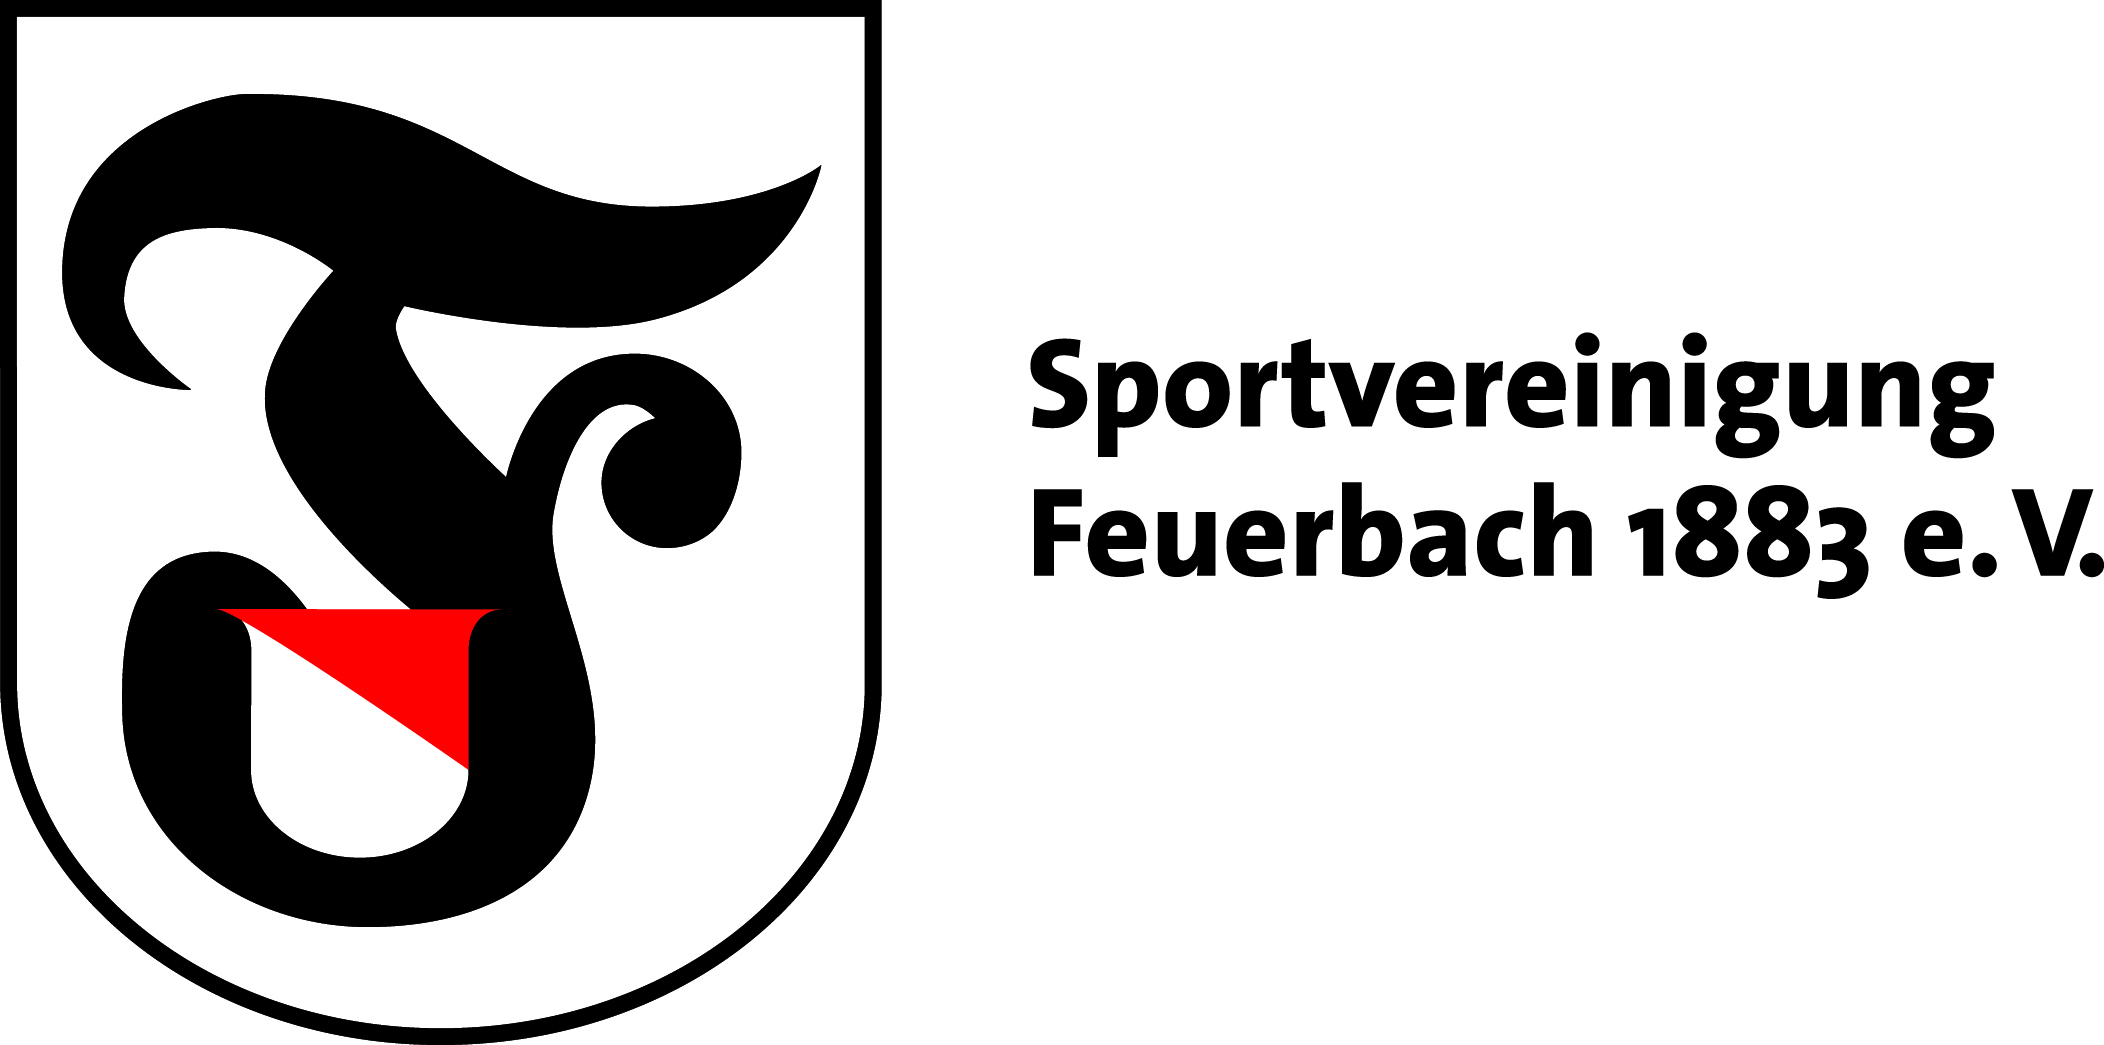 Sportvereinigung Feuerbach 1883 e.V.